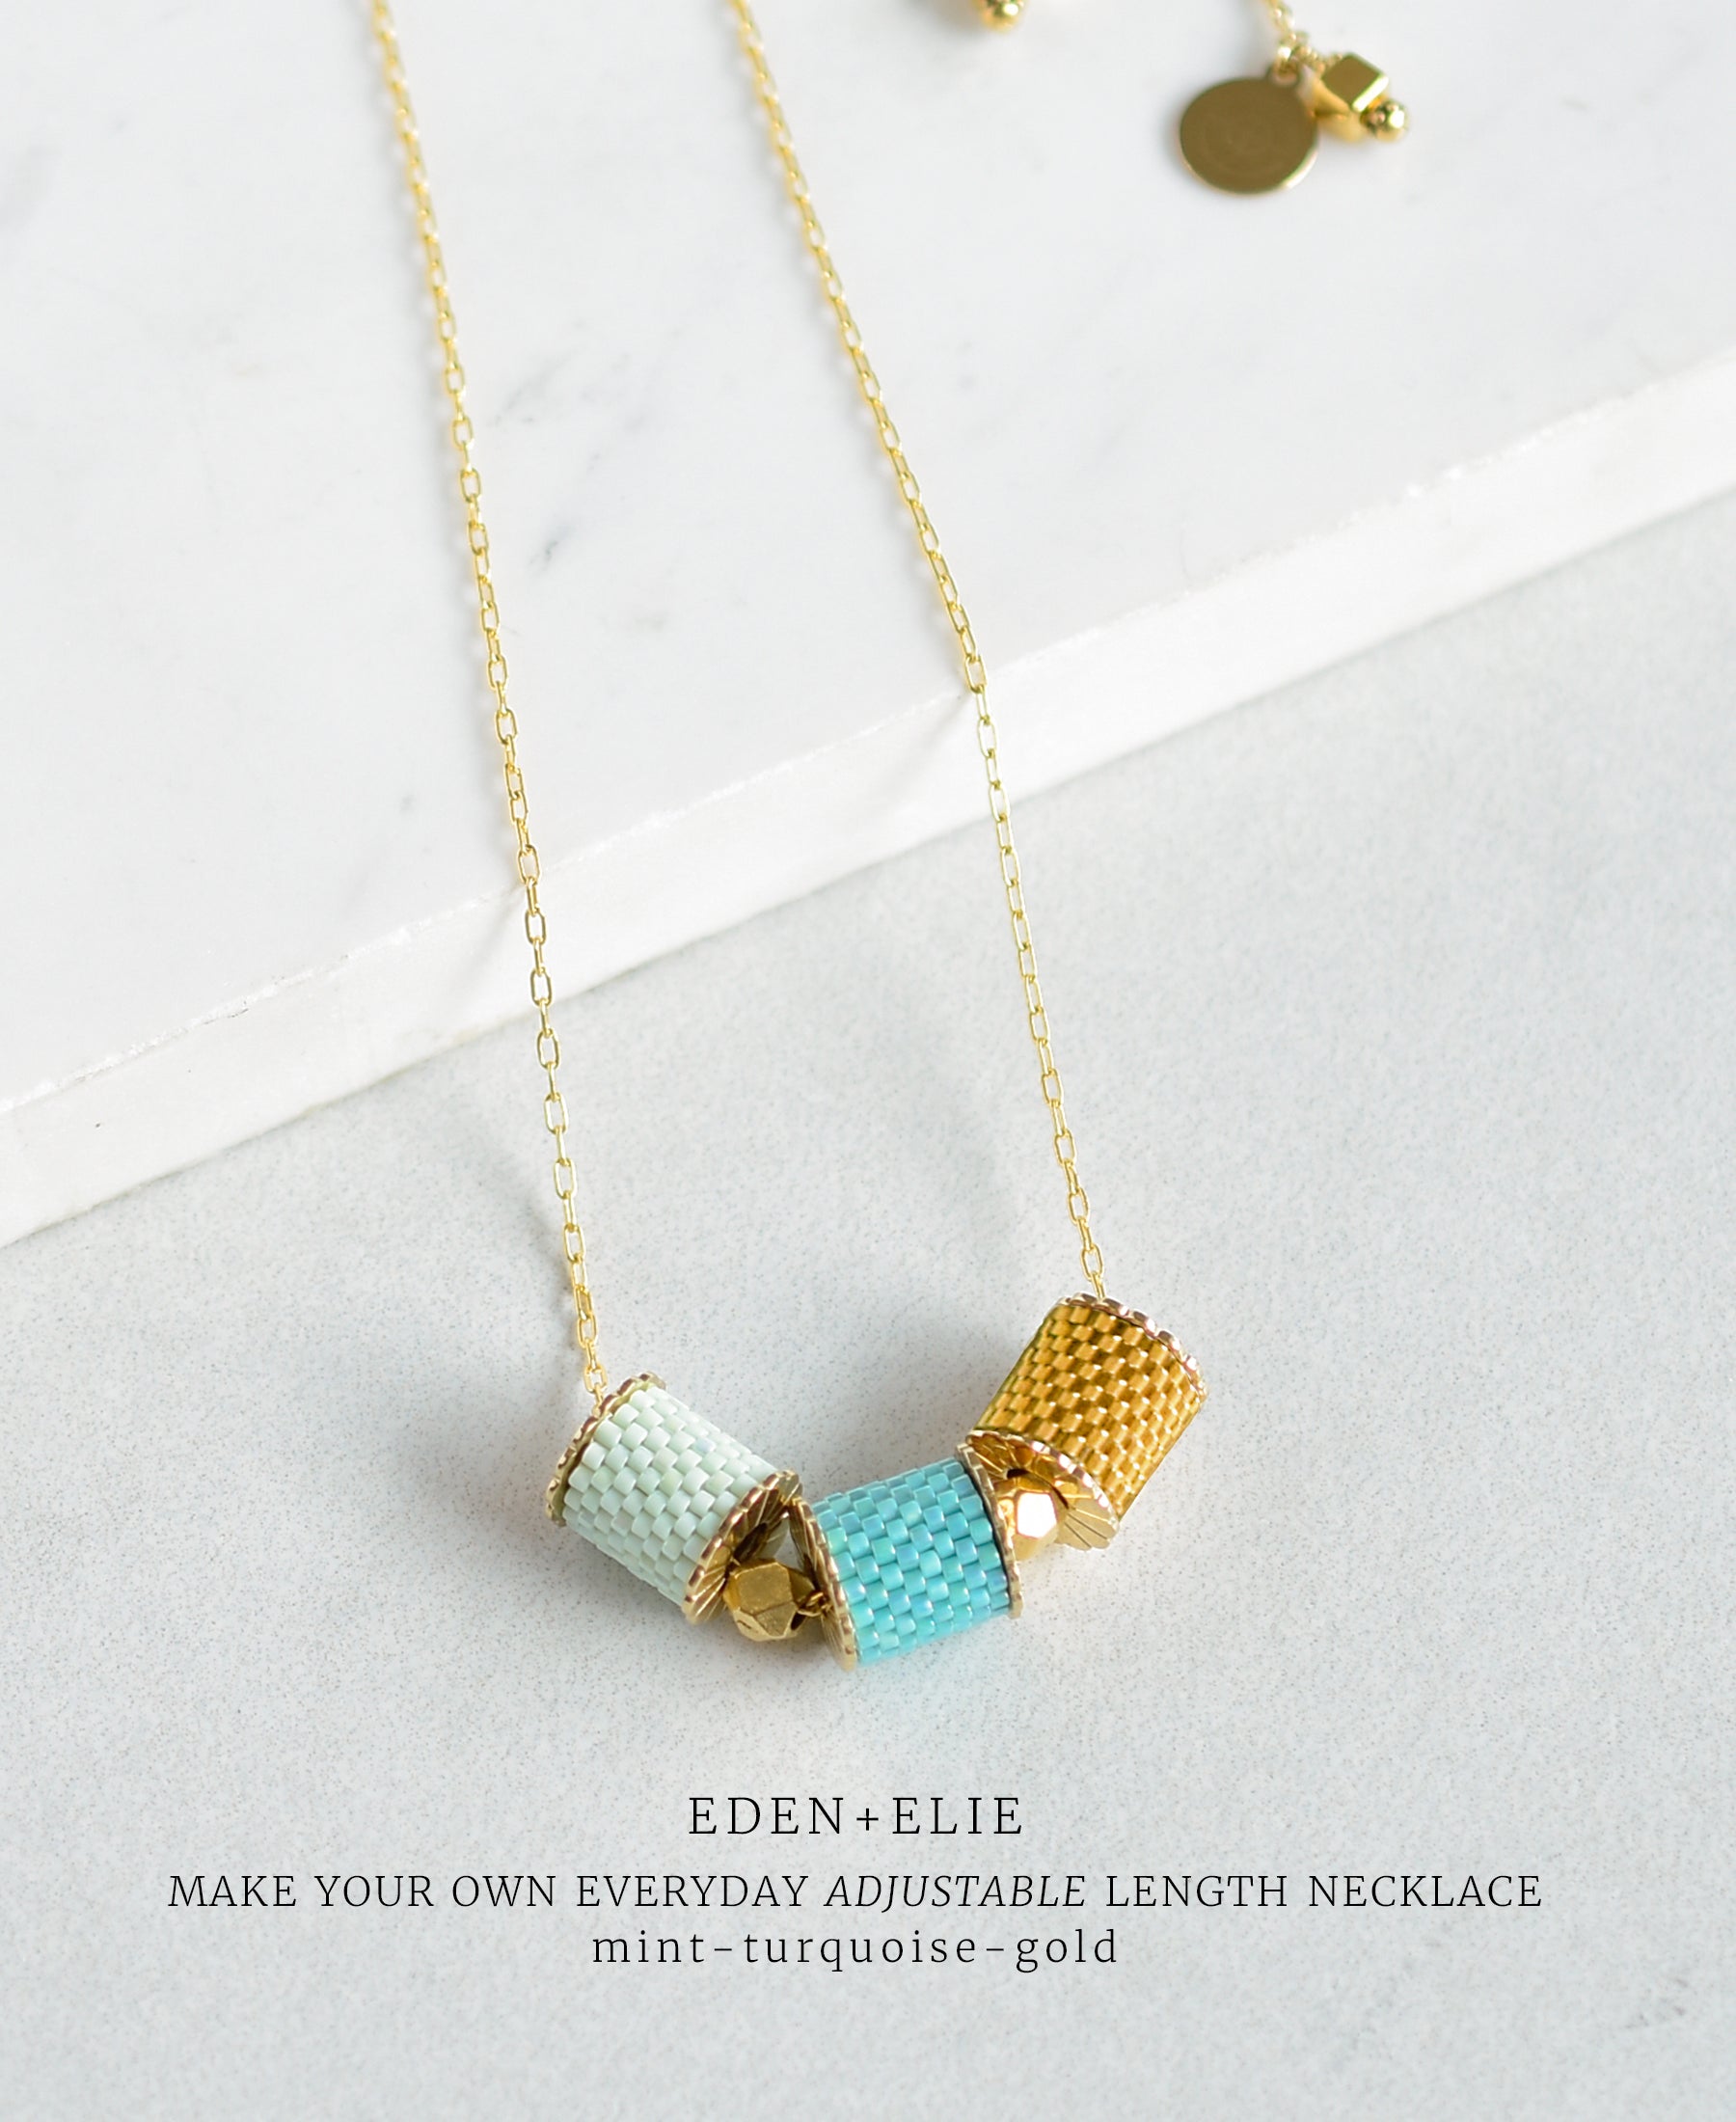 EDEN + ELIE Everyday adjustable length necklace - make your own